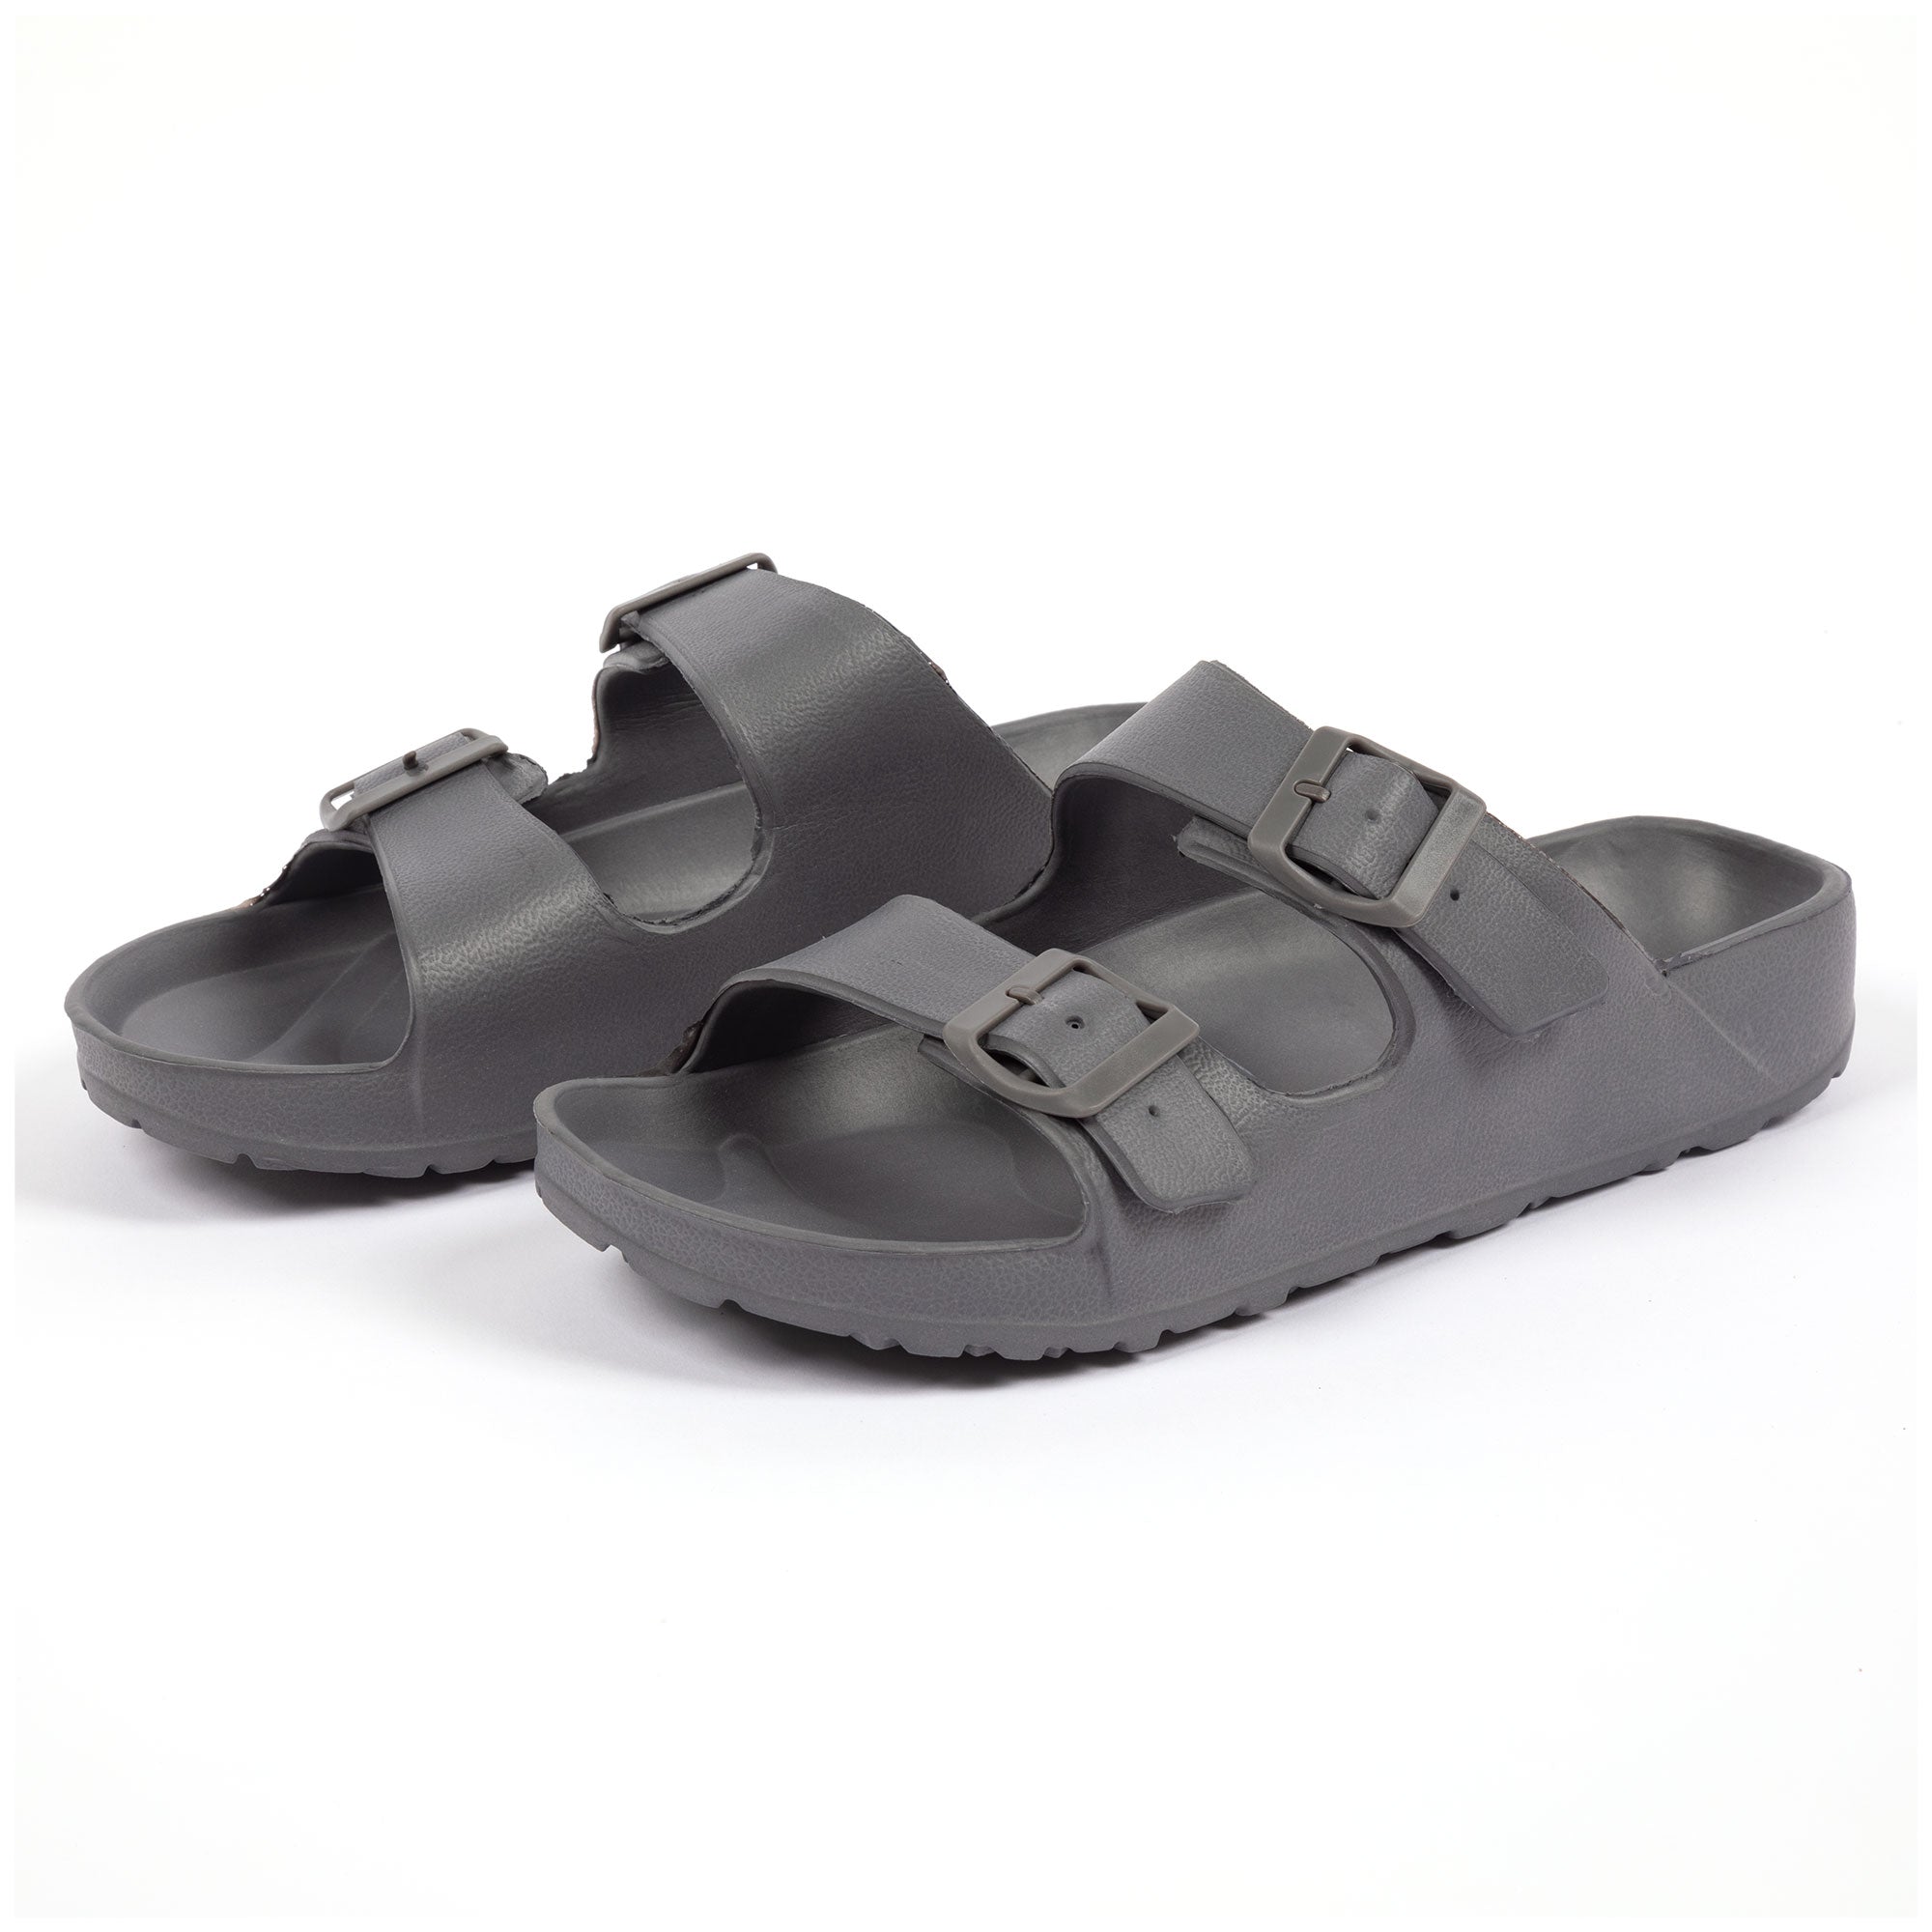 Men's Double Buckle Slide Sandals - Gray - 10